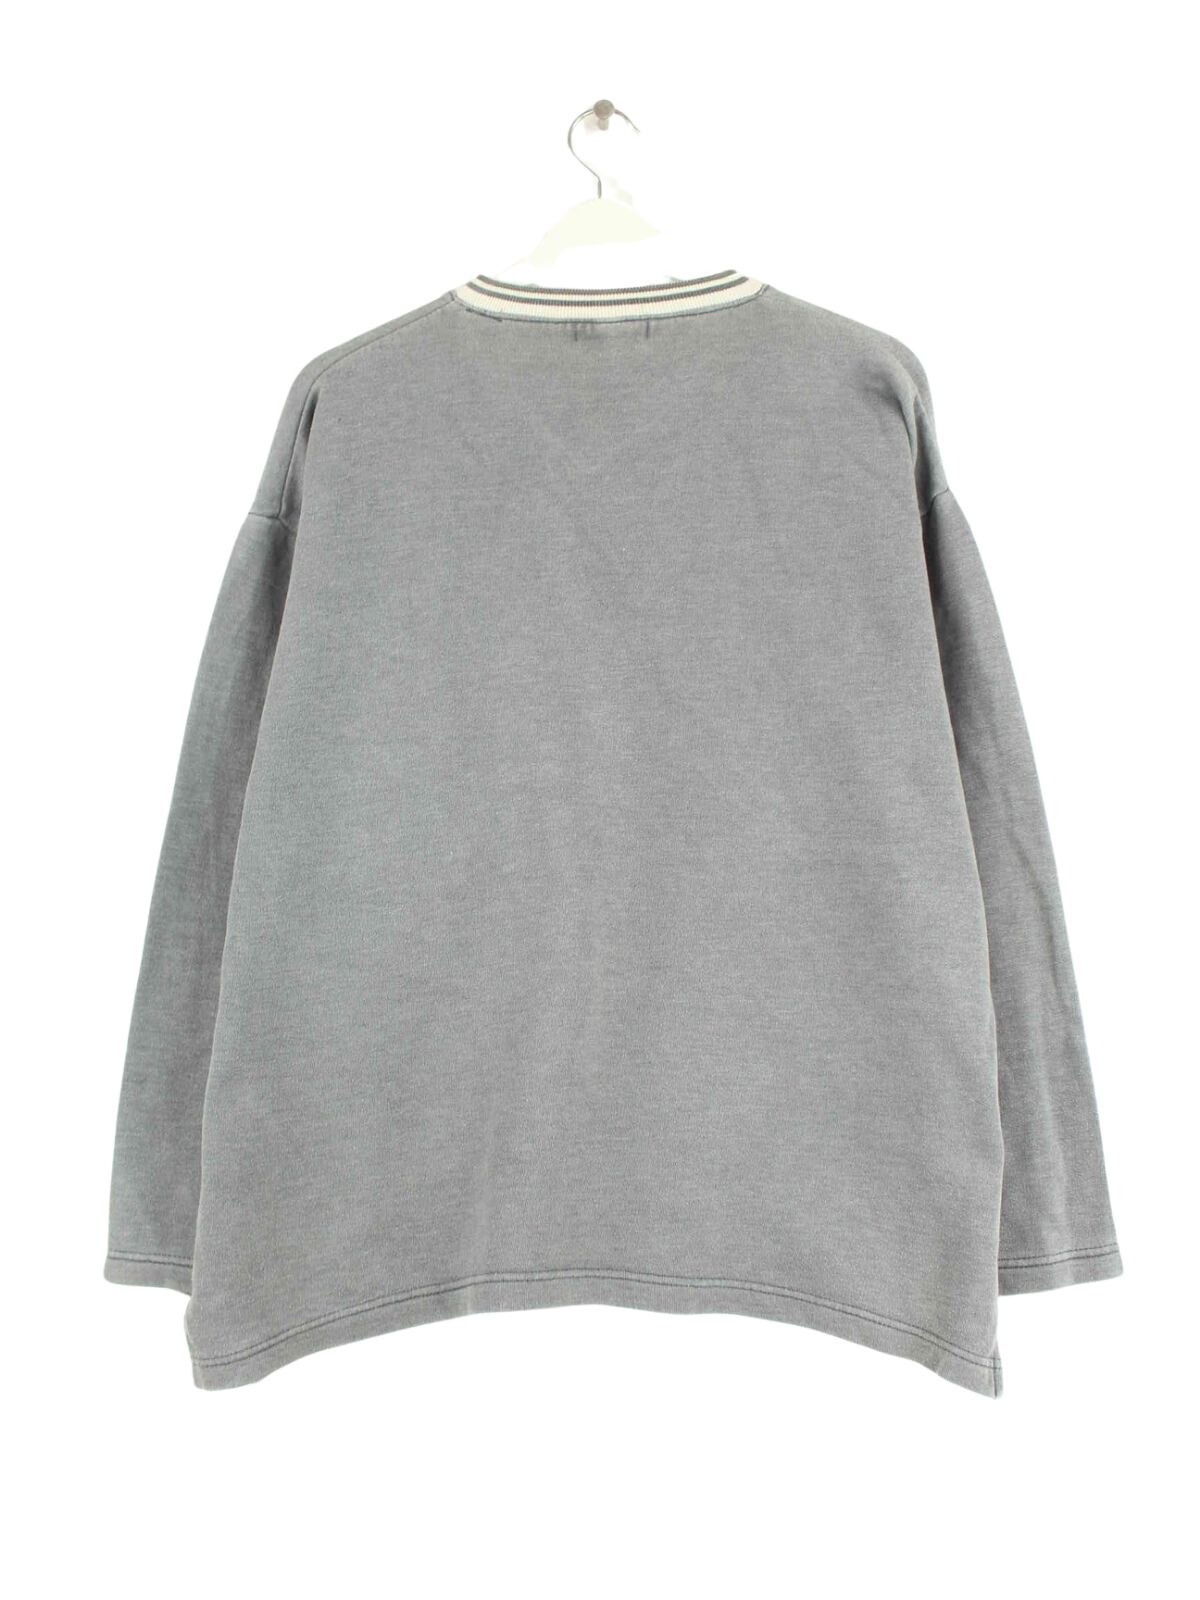 Lacoste 90s Vintage V-Neck Sweater Grau L (back image)